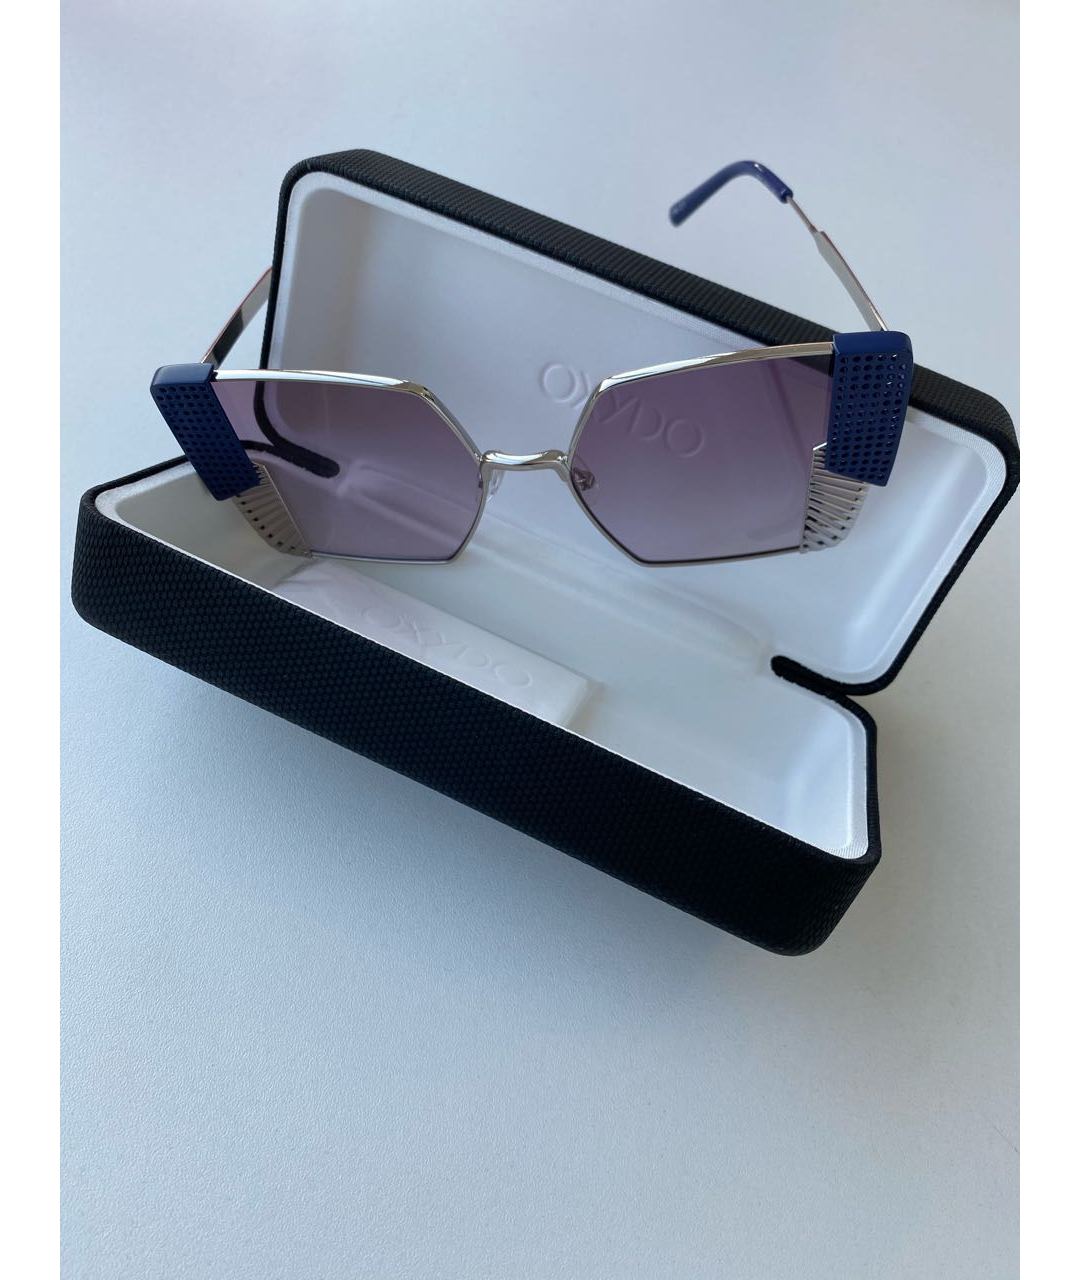 OXYDO Металлические солнцезащитные очки, фото 2